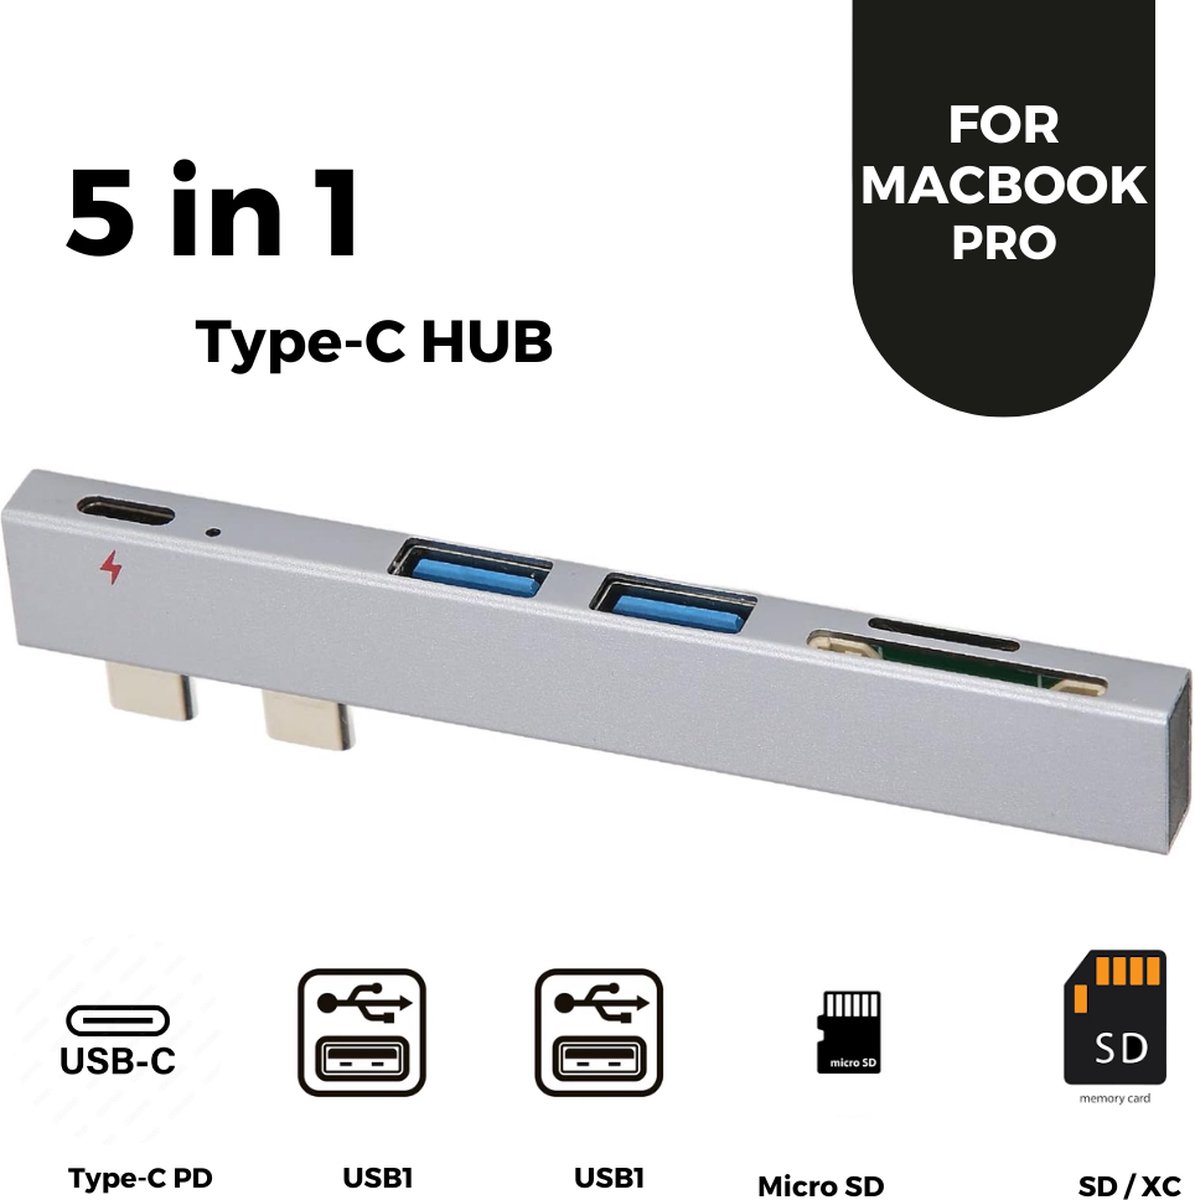 LEA - USB Hub 5 in 1 Type-C Hub 3.0 Dual Type-C voor Macbook Pro USB-C Adapter - Card Reader